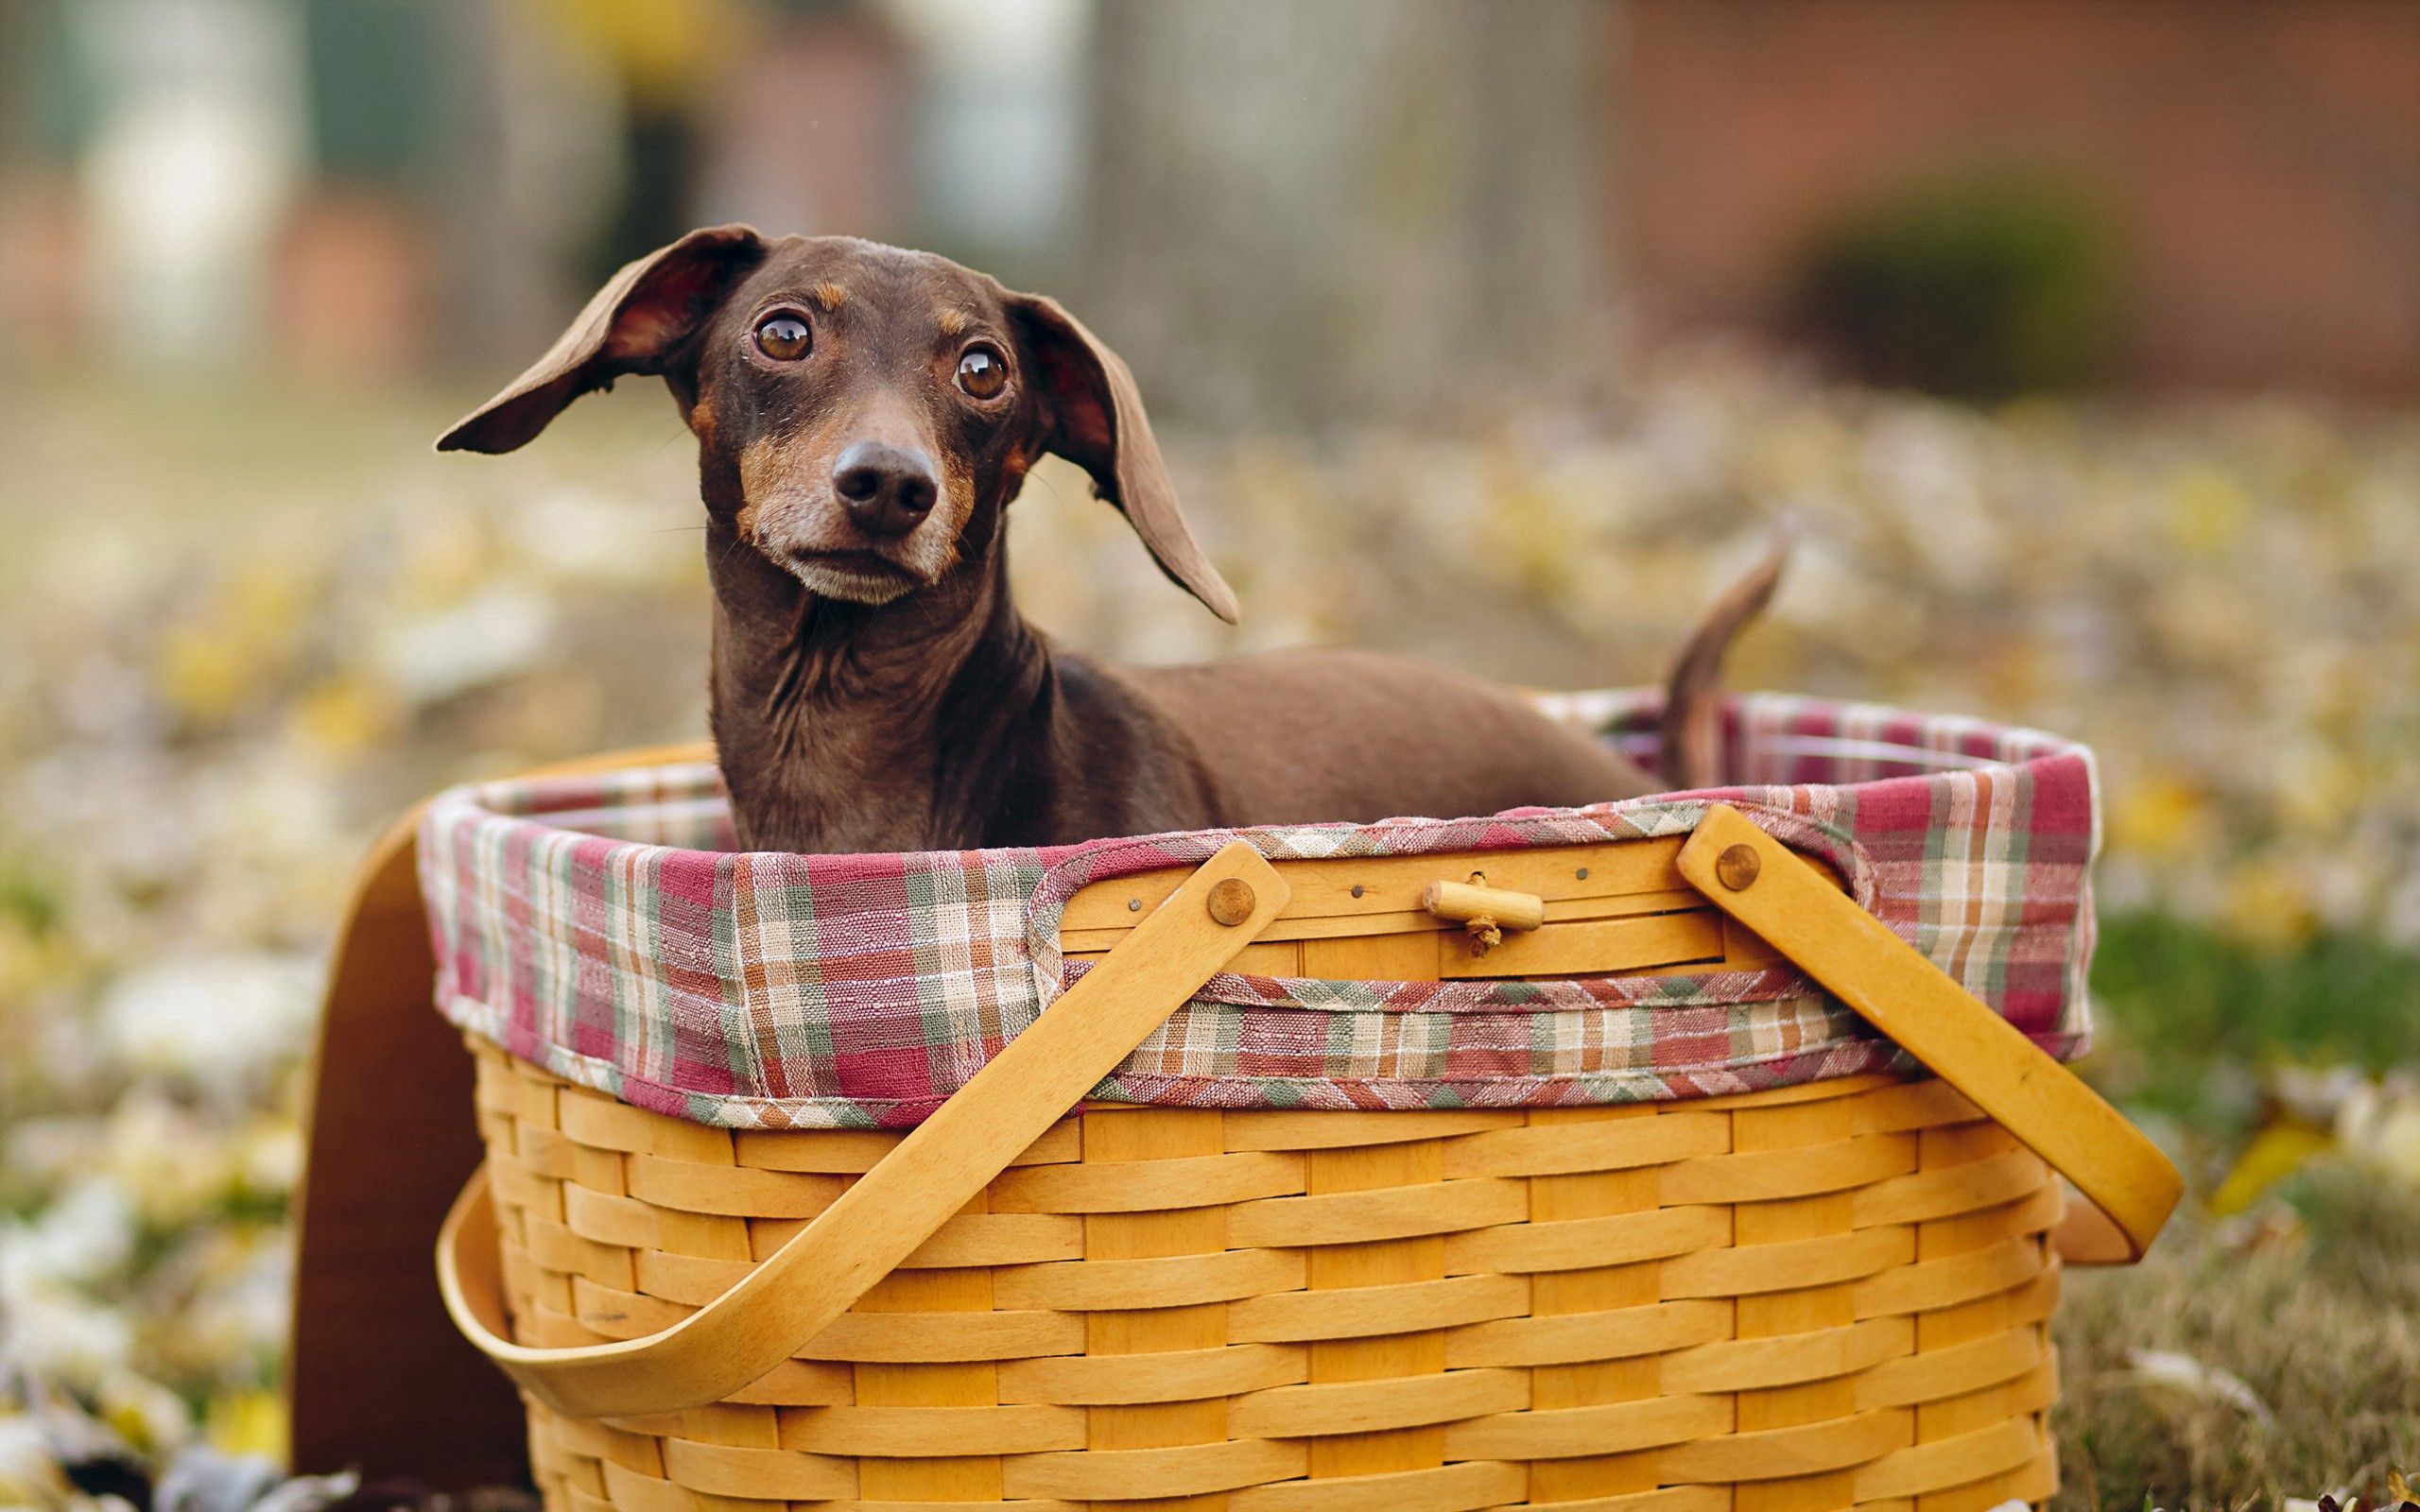 animals, sit, dog, muzzle, basket UHD